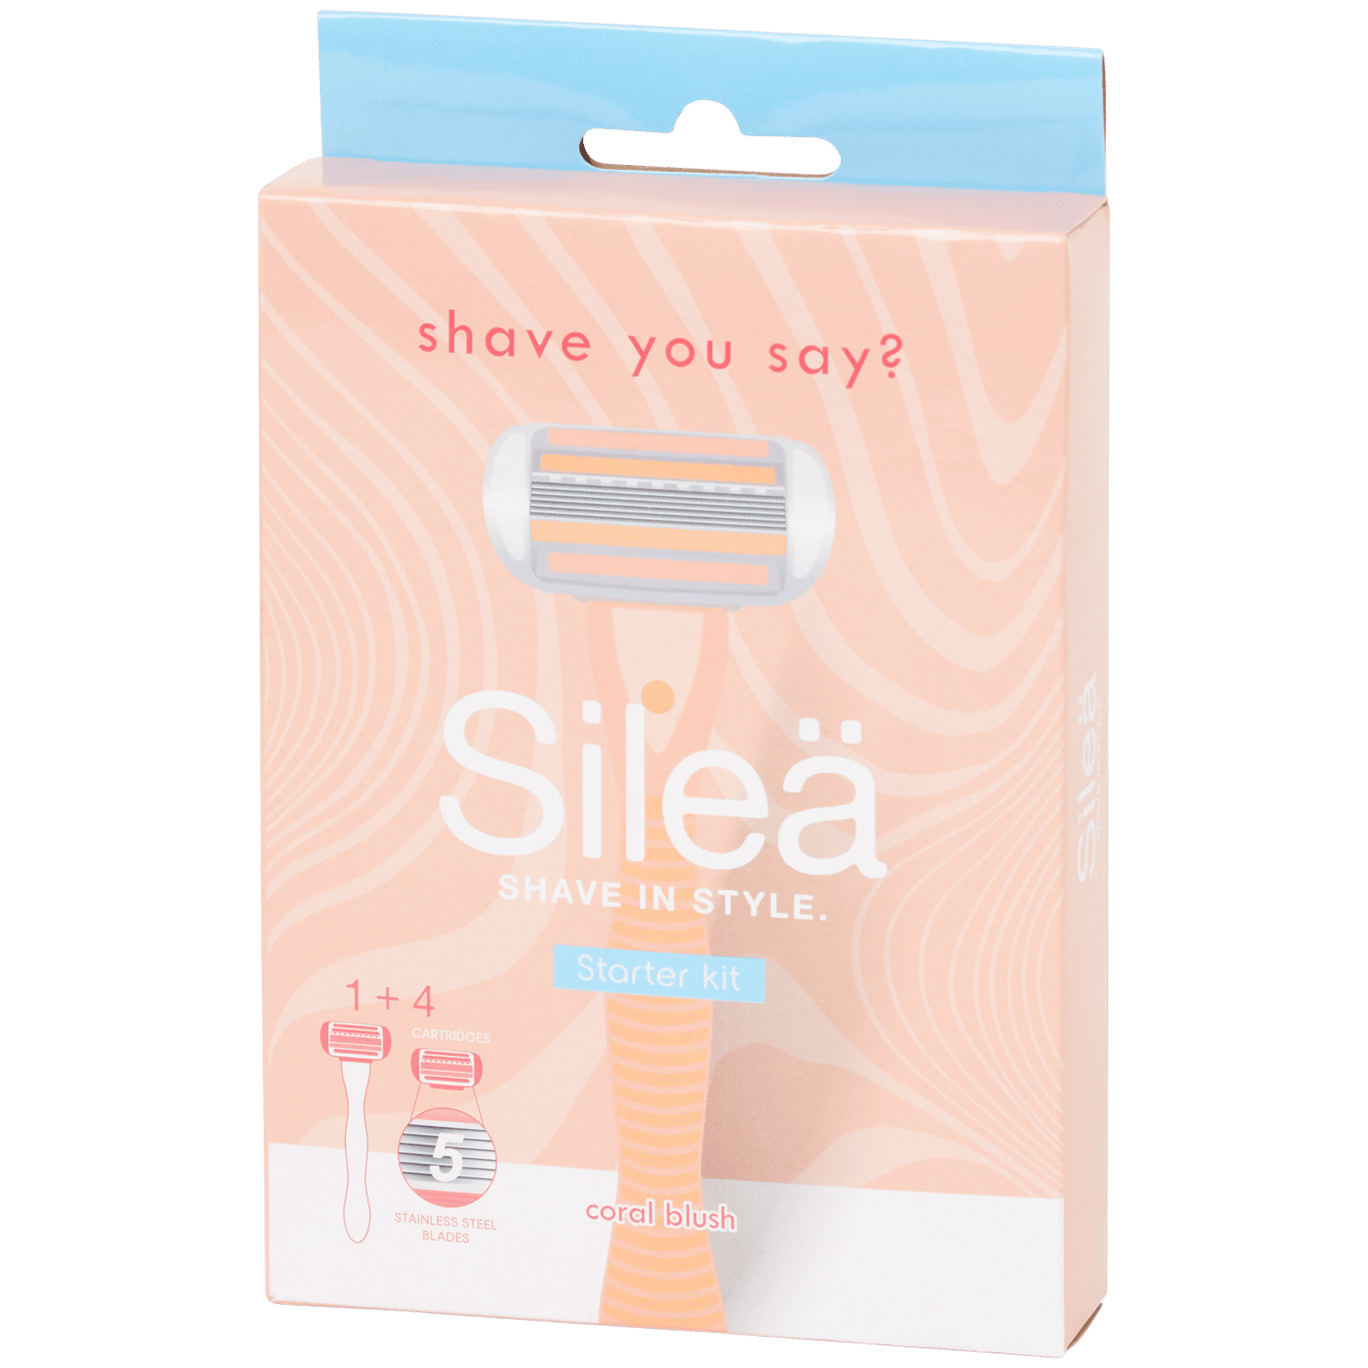 Maszynka do golenia zestaw startowy Silea